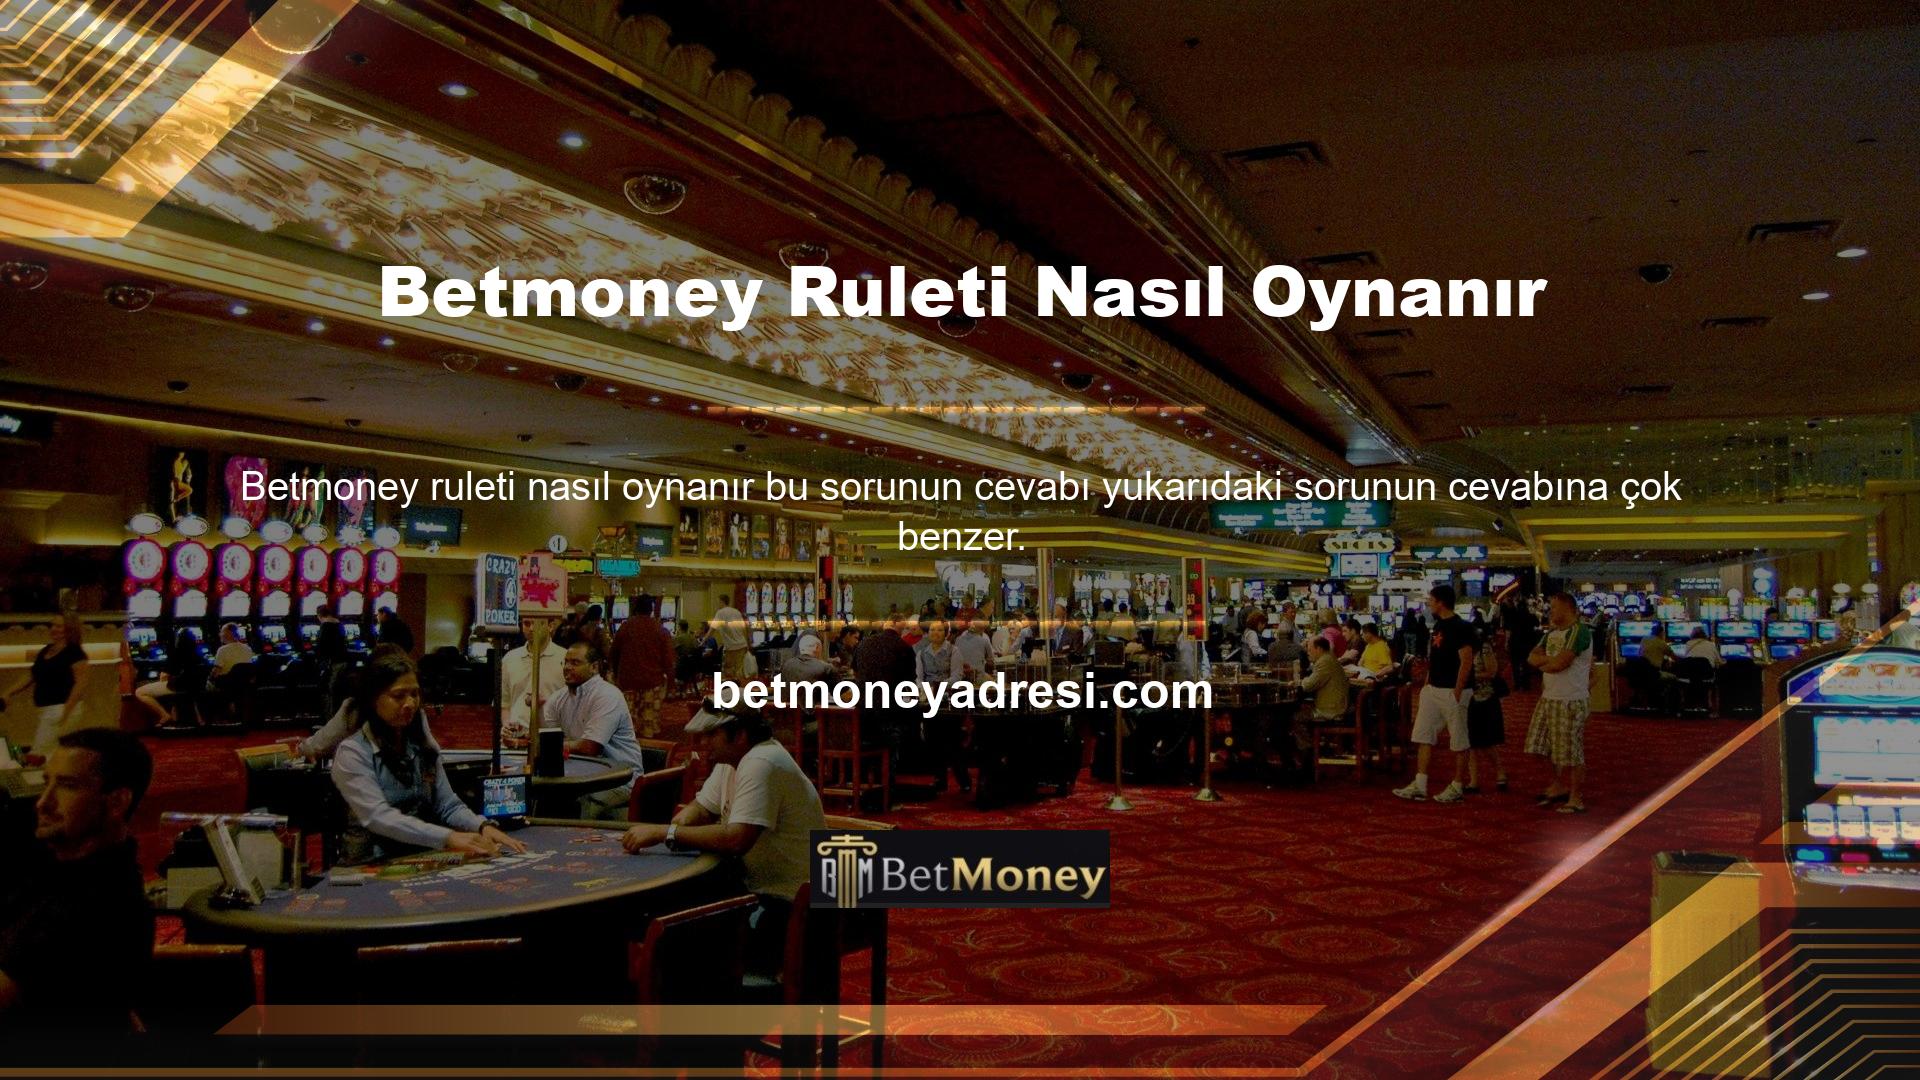 Rulet casino oyunlarından biridir ve katılmak istiyorsanız üye olmanız ve oyun için para yatırmanız gerekmektedir